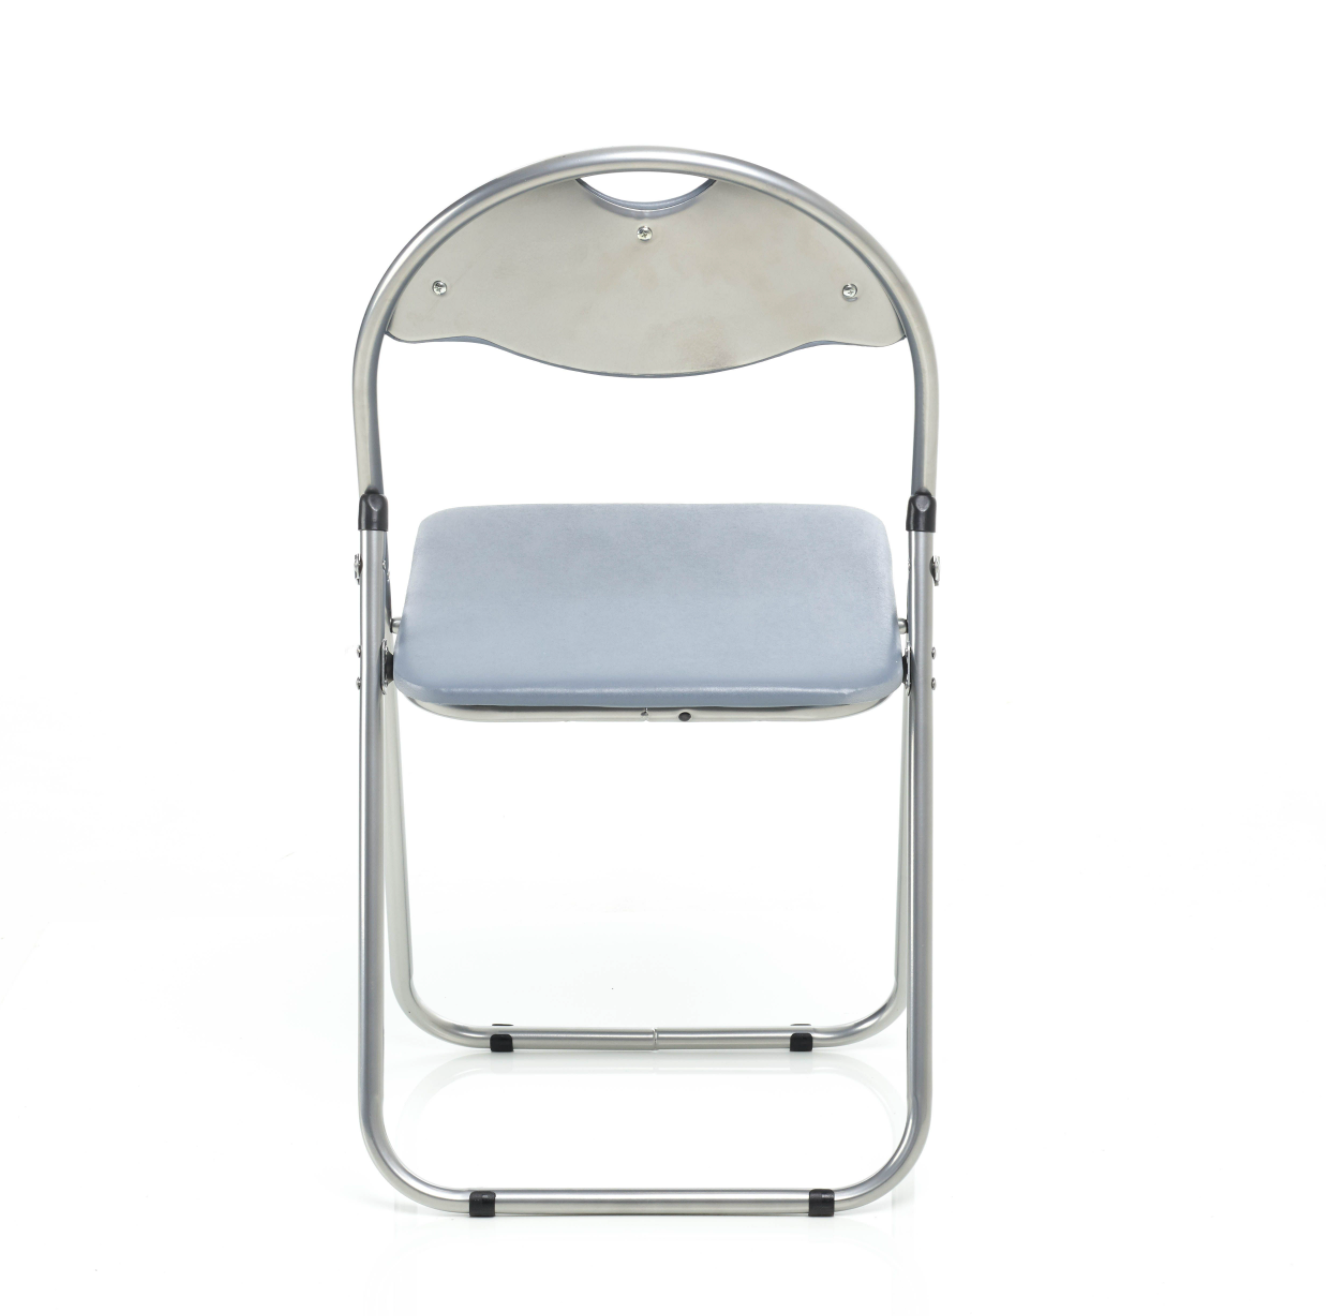 Folding Padded Office Chair - Grey Bravich LTD.